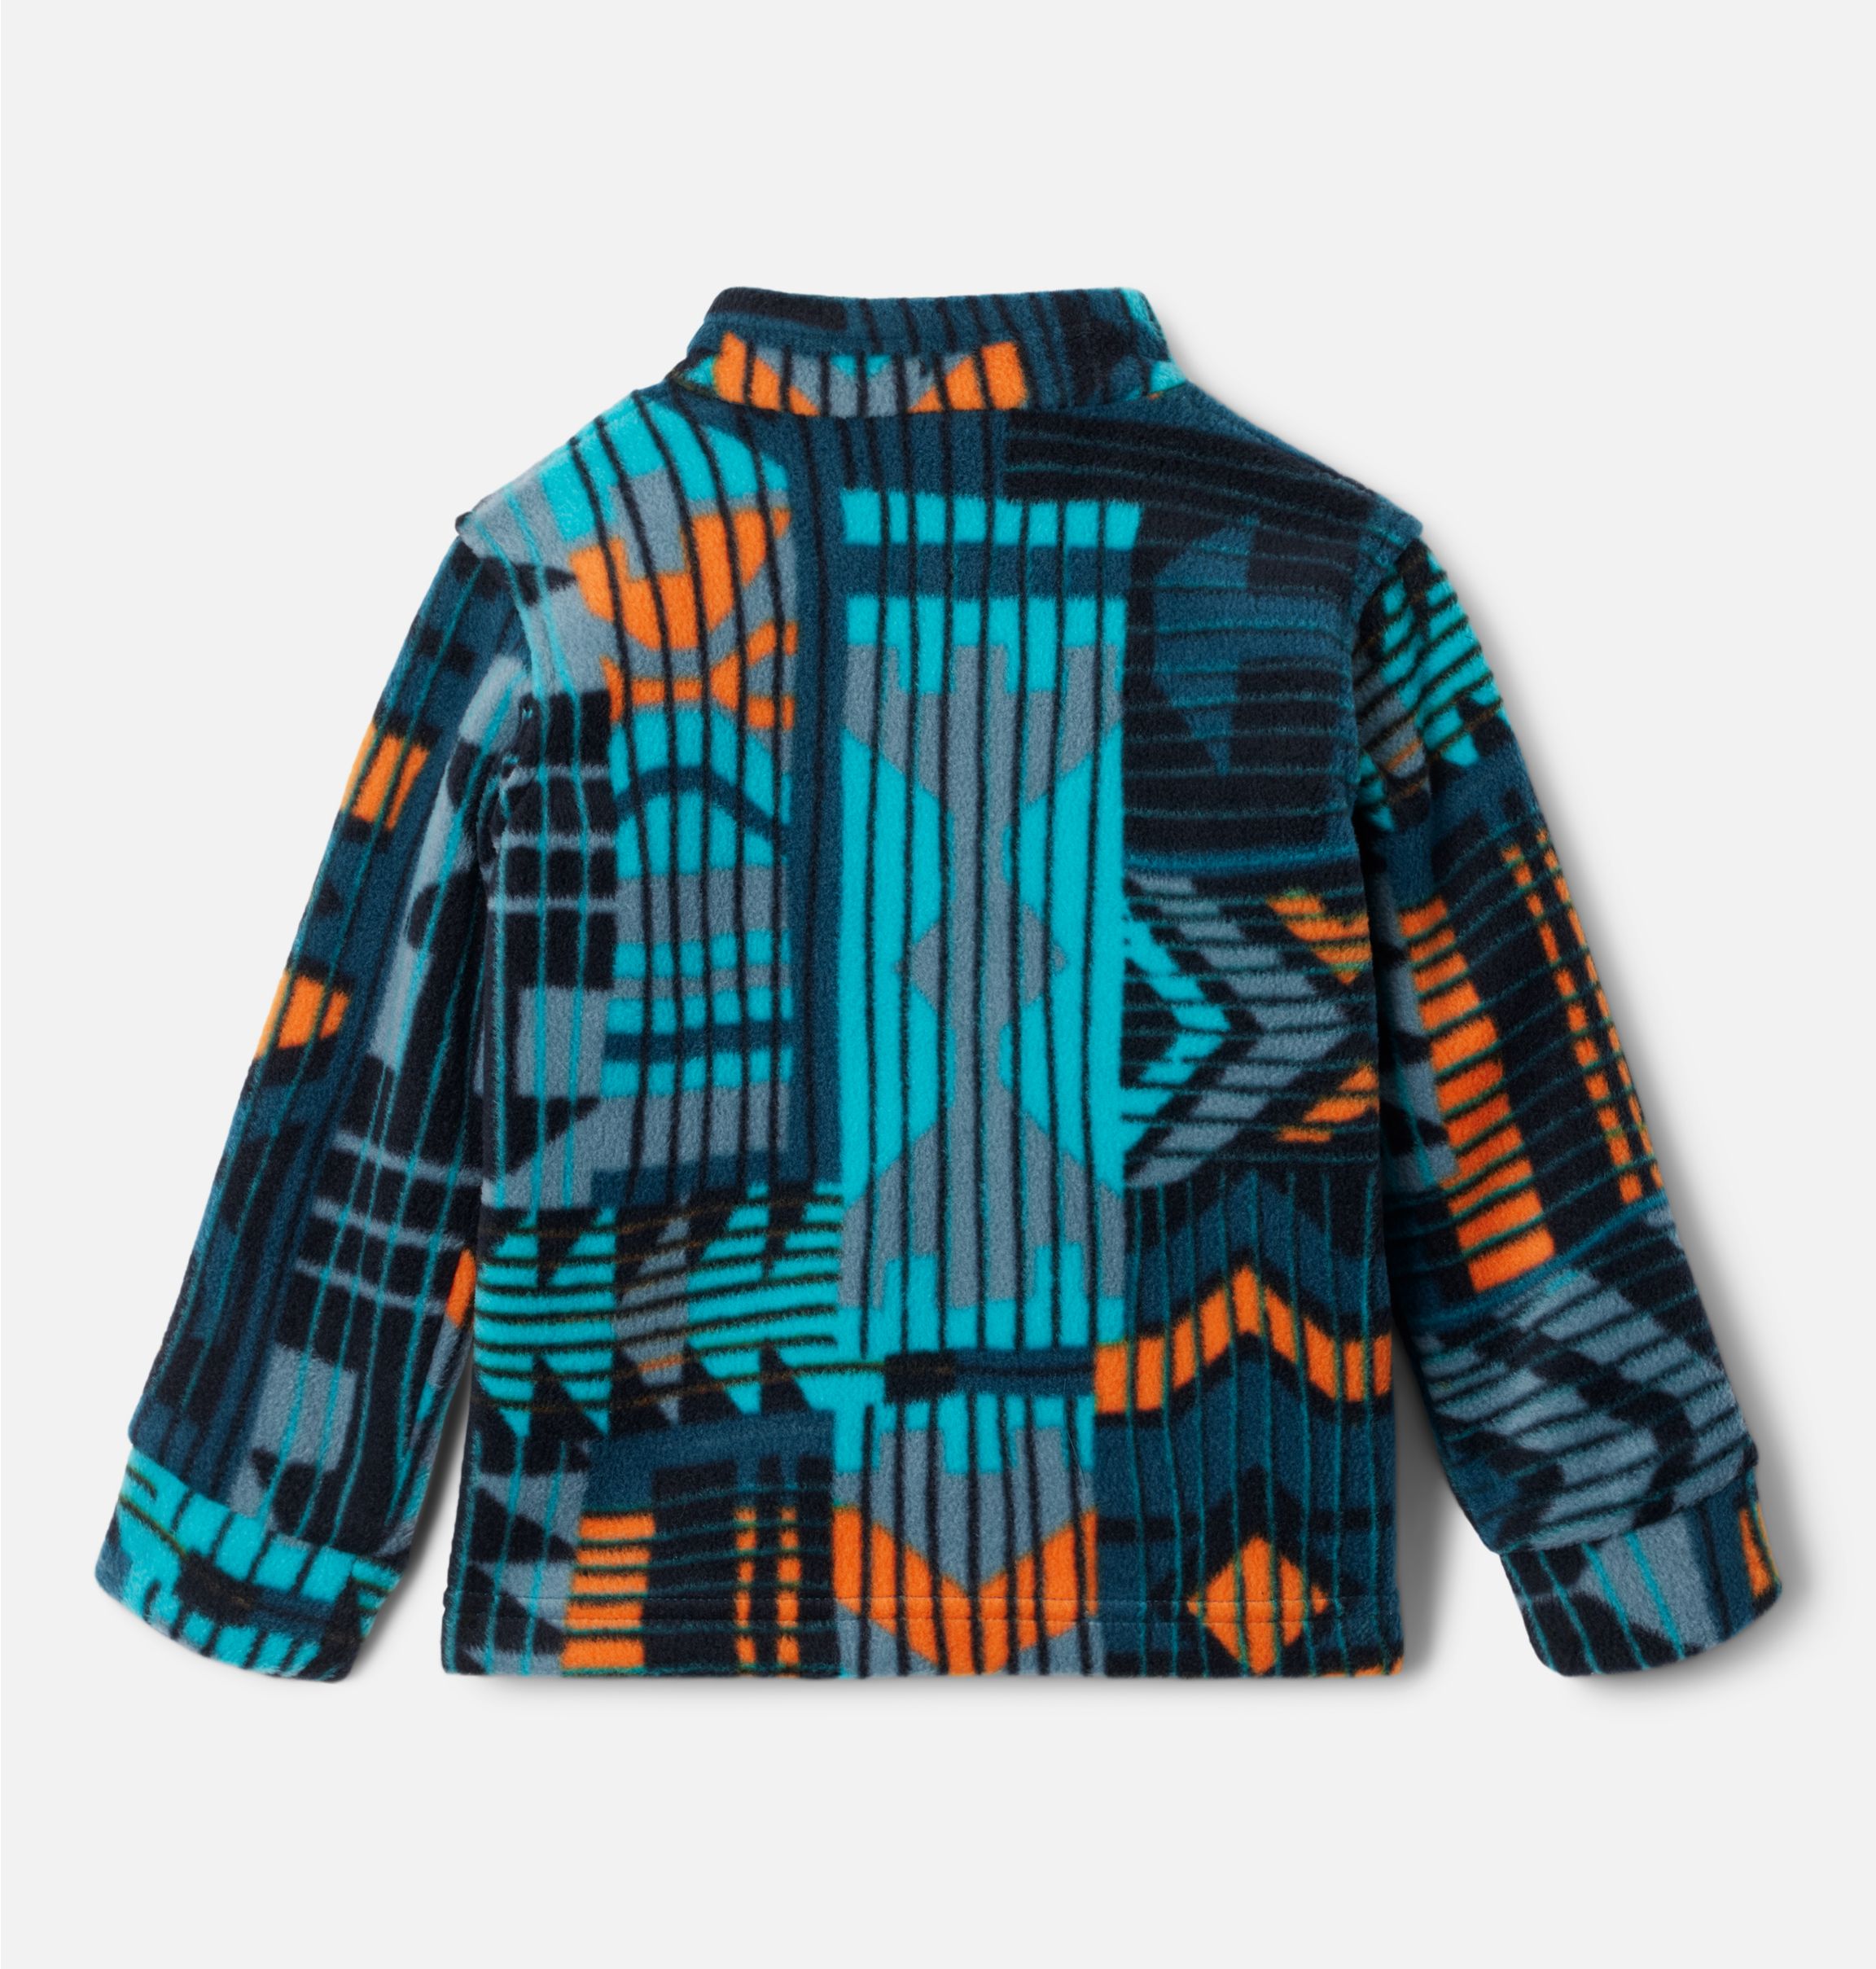 Boys' Zing™ III Printed Fleece Jacket